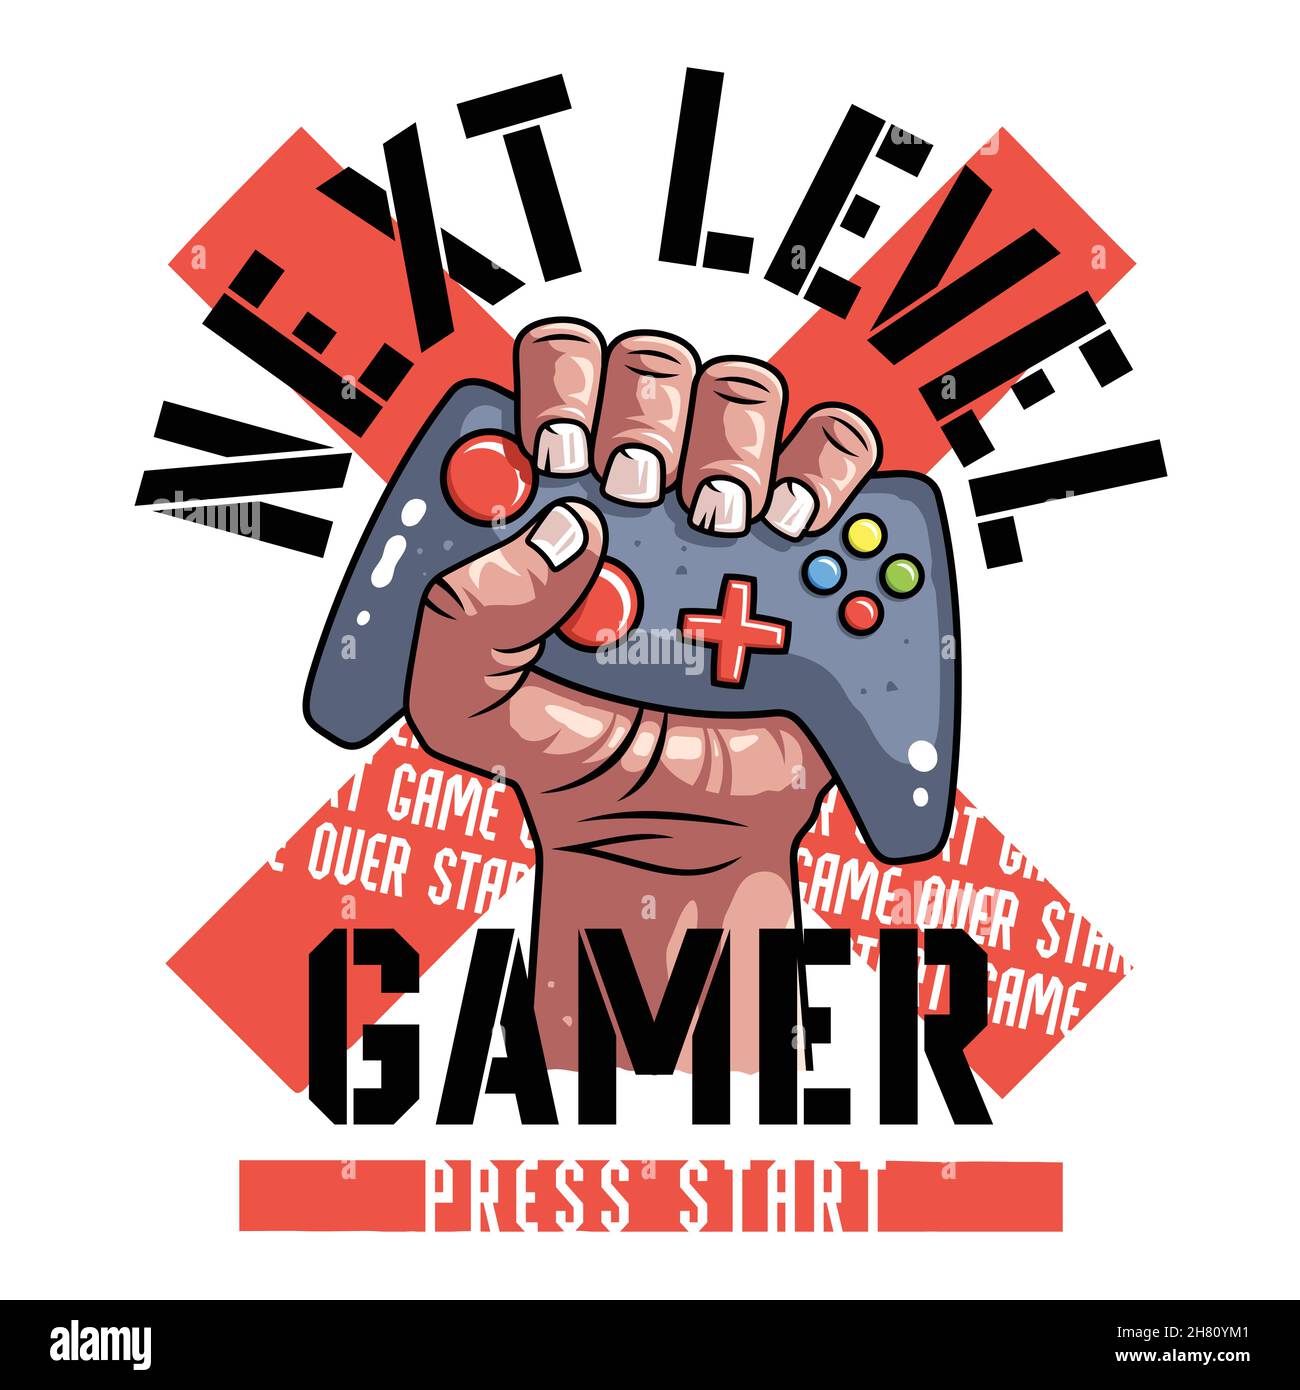 Ilustración de joystick de juego vectorial con tipografía para impresiones de camisetas Ilustración del Vector